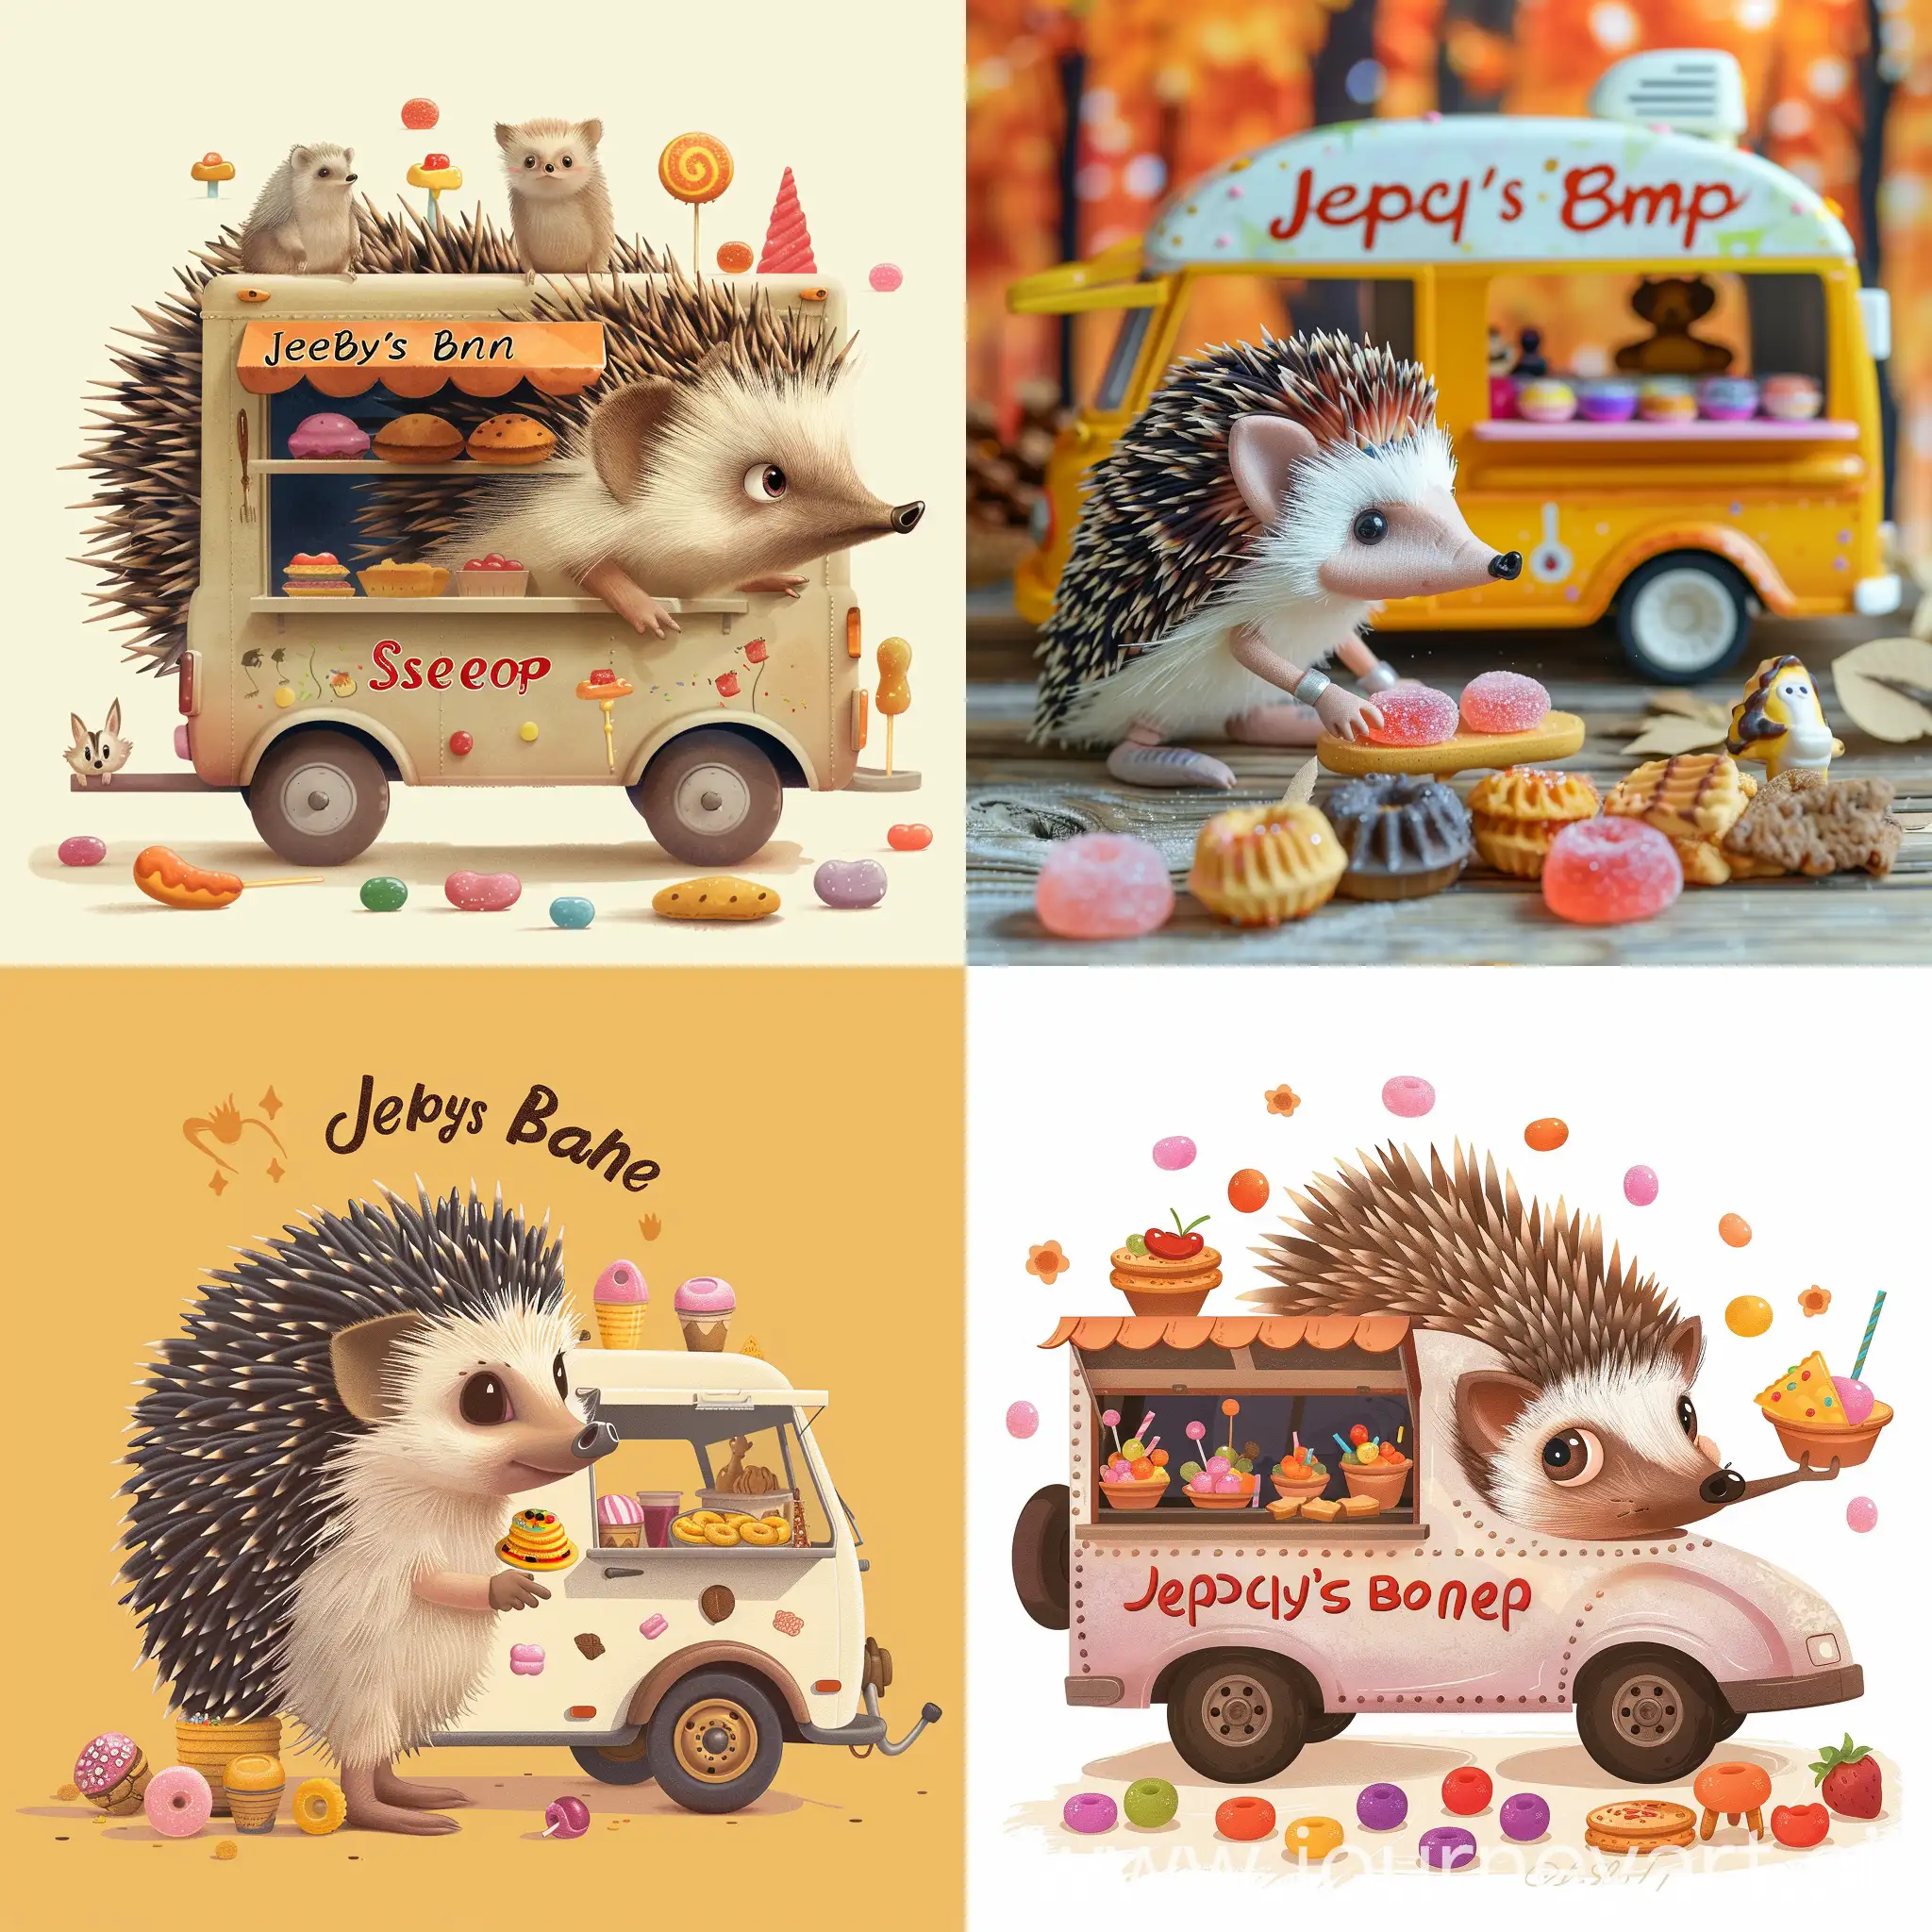 Adorable-Hedgehog-Food-Truck-Vendor-Serving-Animal-Snacks